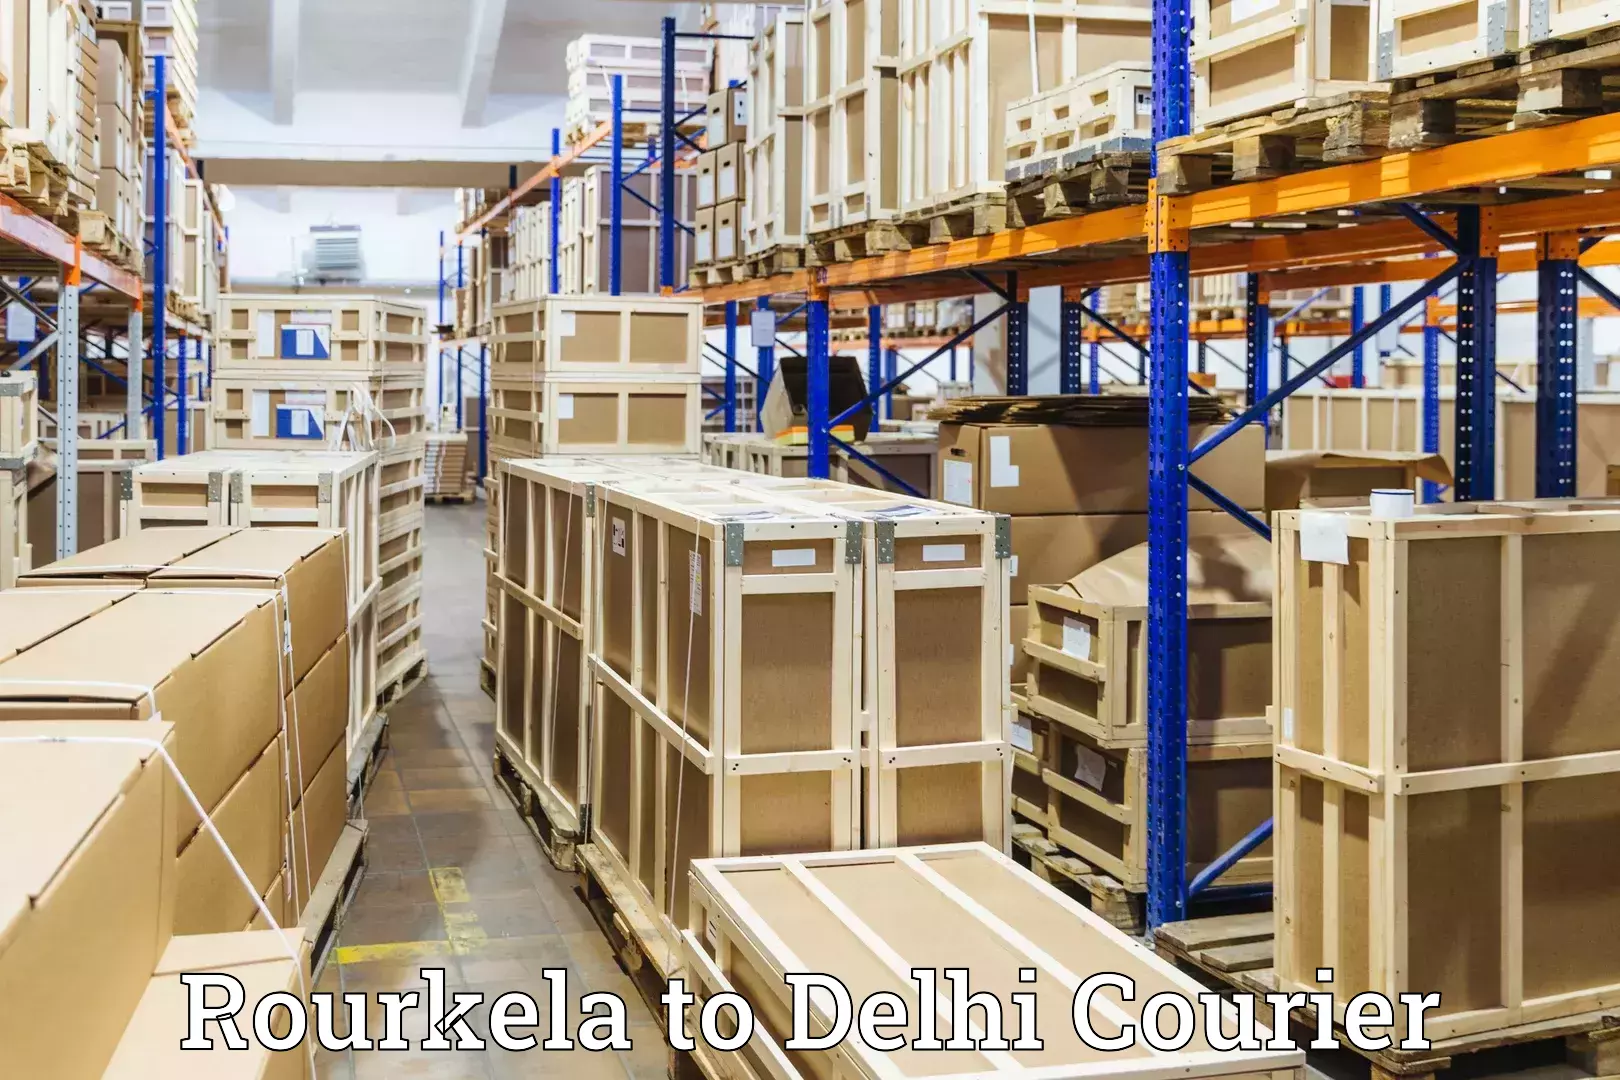 Baggage transport network Rourkela to Jamia Millia Islamia New Delhi